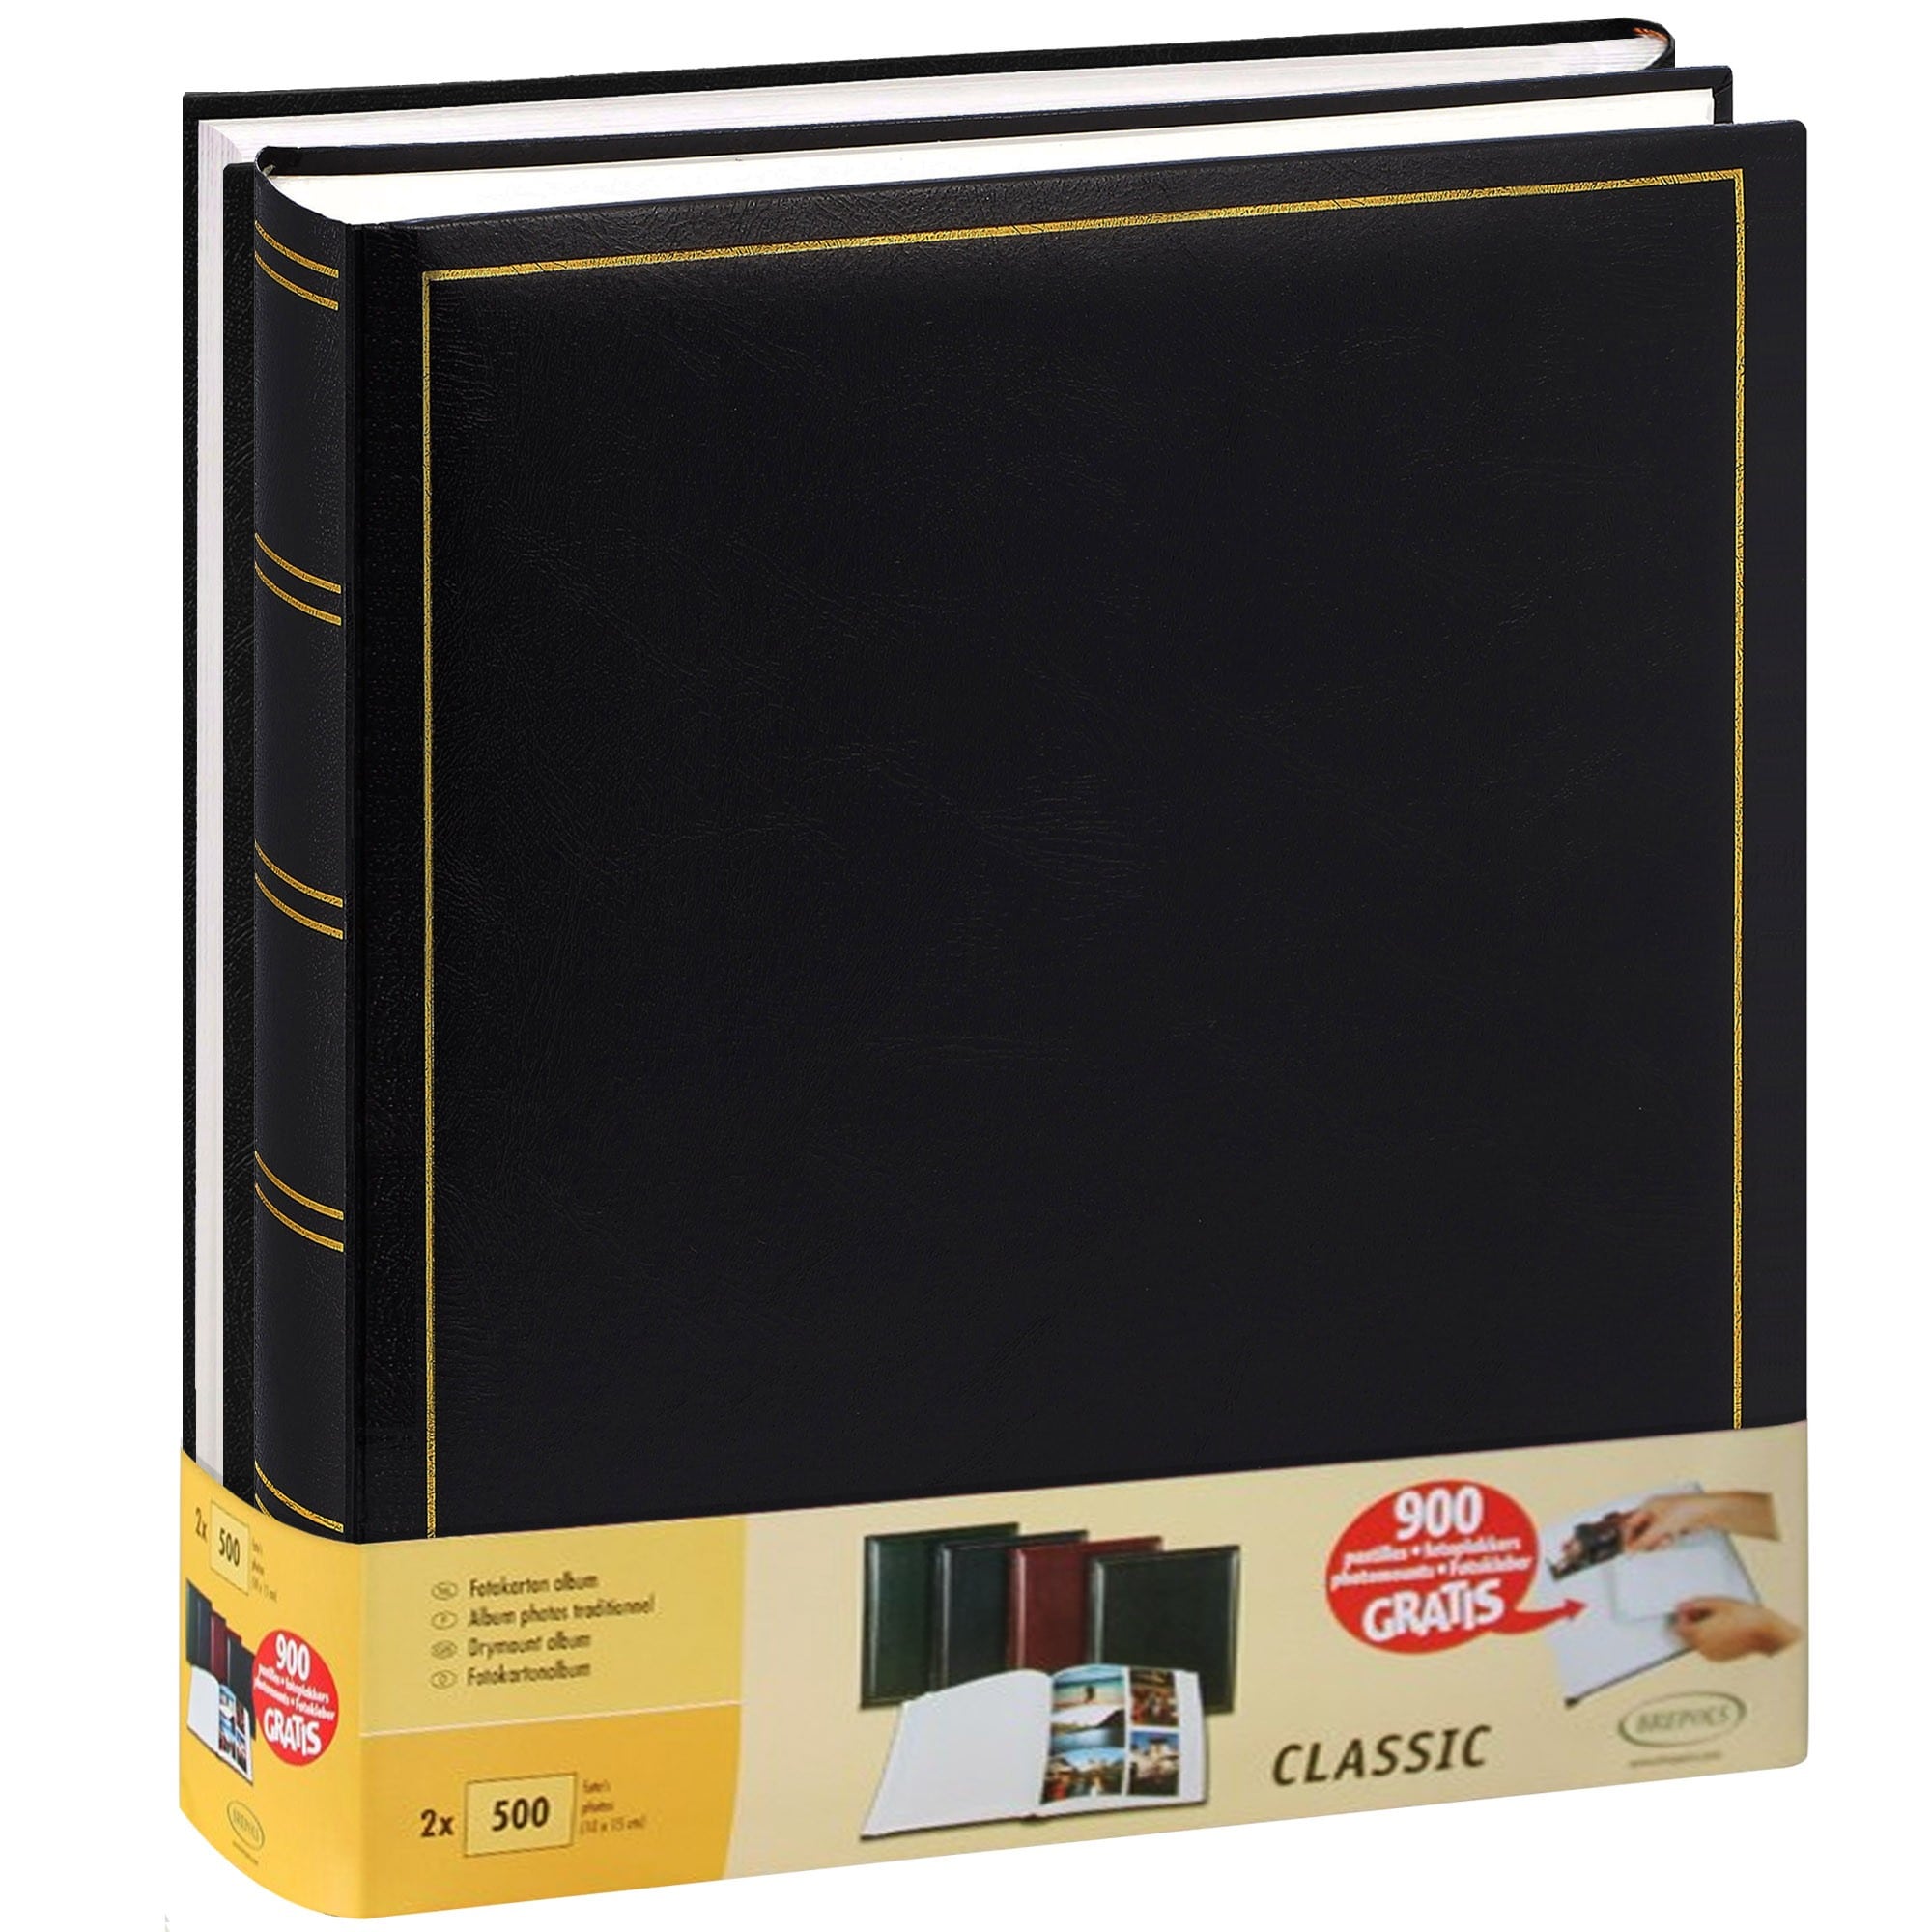 BREPOLS - Album photo traditionnel  JUMBO - 100 pages blanches + feuillets cristal - 500 photos - Couverture Noire 29x32cm - Lot de 2 + 900 pastilles